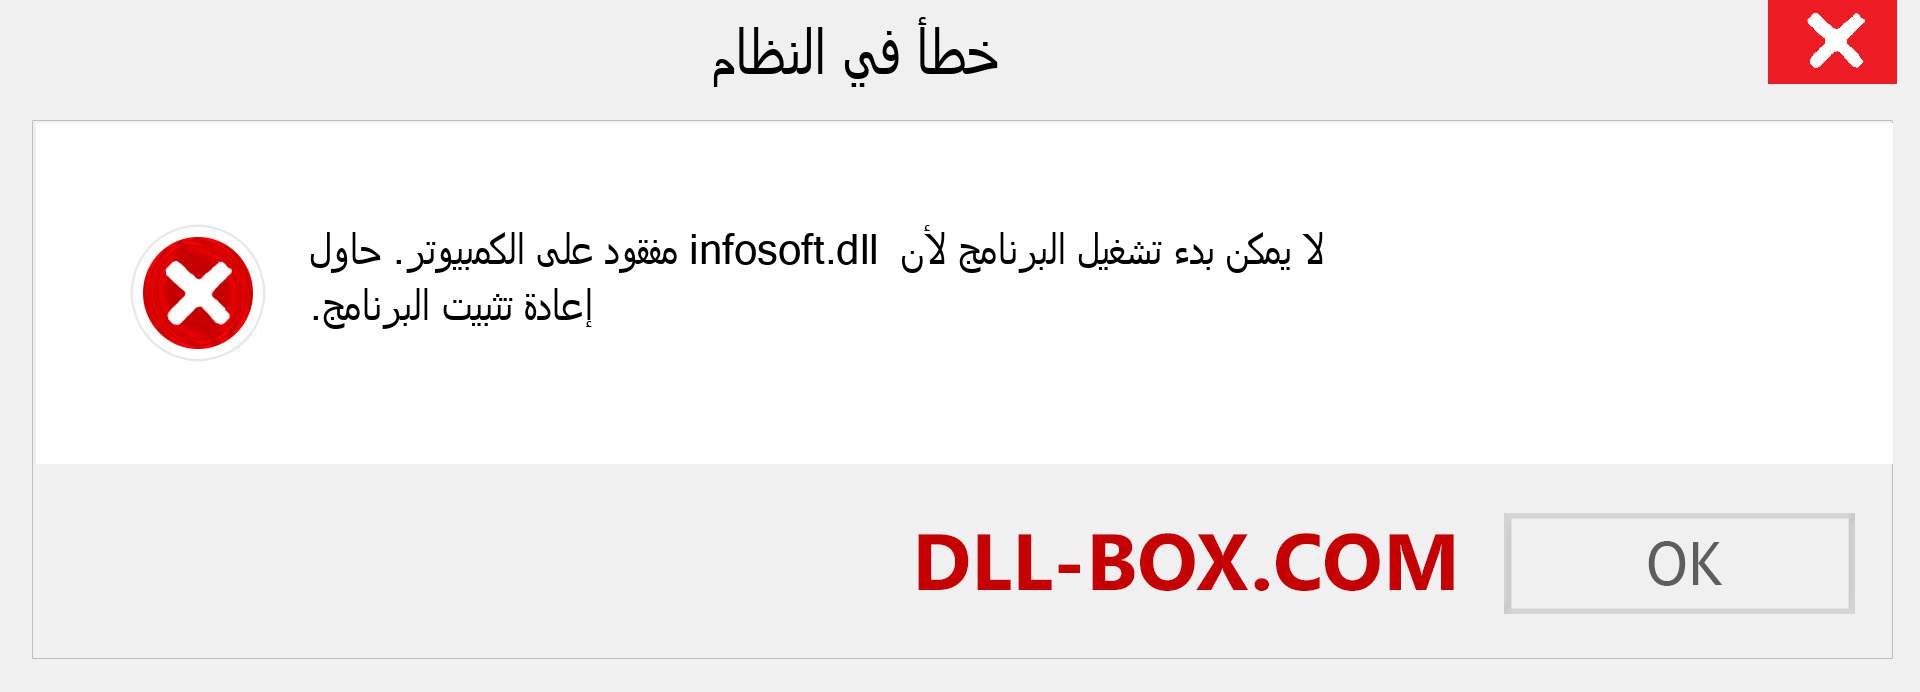 ملف infosoft.dll مفقود ؟. التنزيل لنظام التشغيل Windows 7 و 8 و 10 - إصلاح خطأ infosoft dll المفقود على Windows والصور والصور